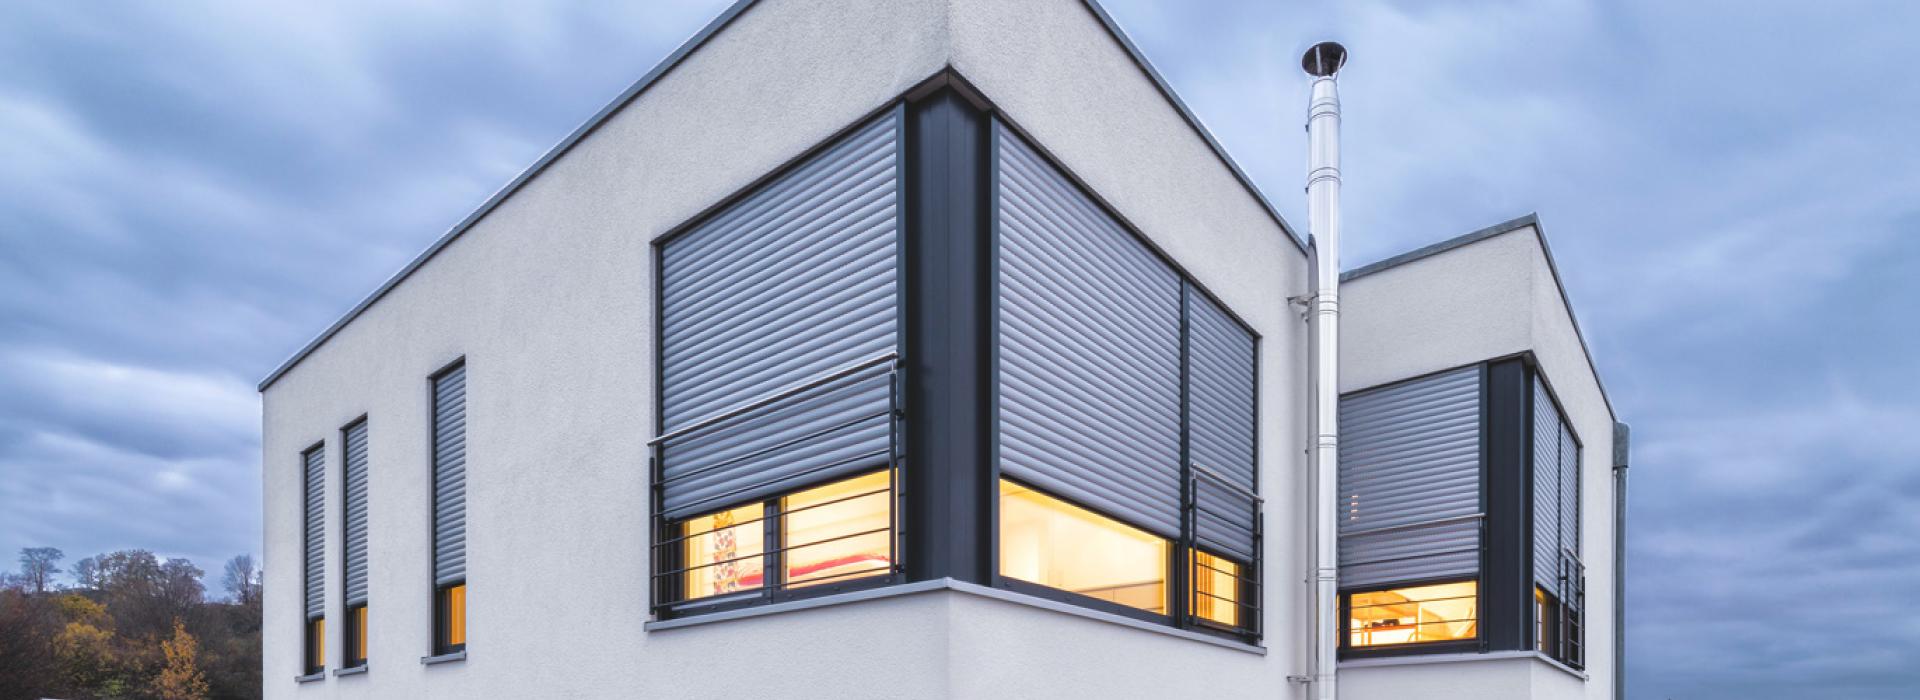 Einfamilienhaus Detailansicht Fenster mit dreiviertel geschlossenen Rollladen